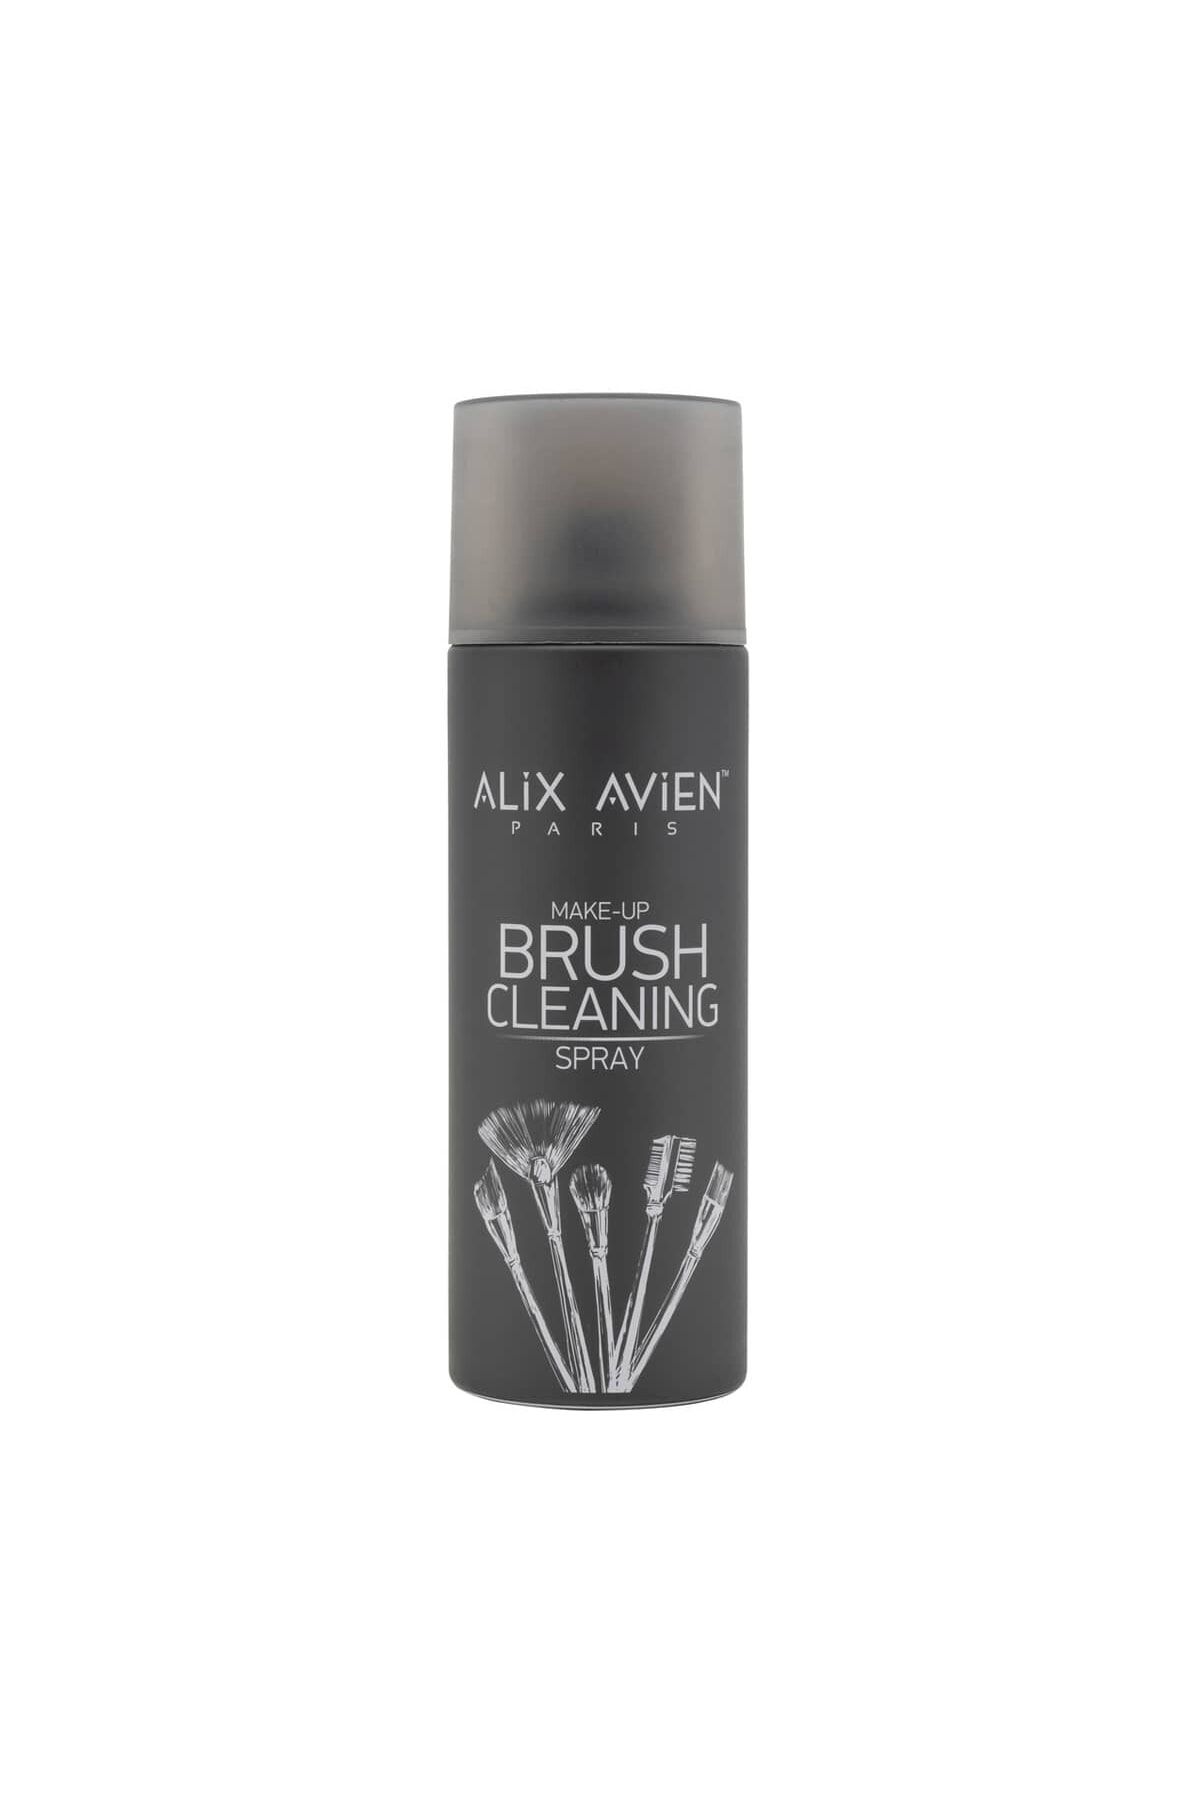 Alix Avien Makyaj Fırçası Temizleme Spreyi - Make Up Brush Cleaning Spray